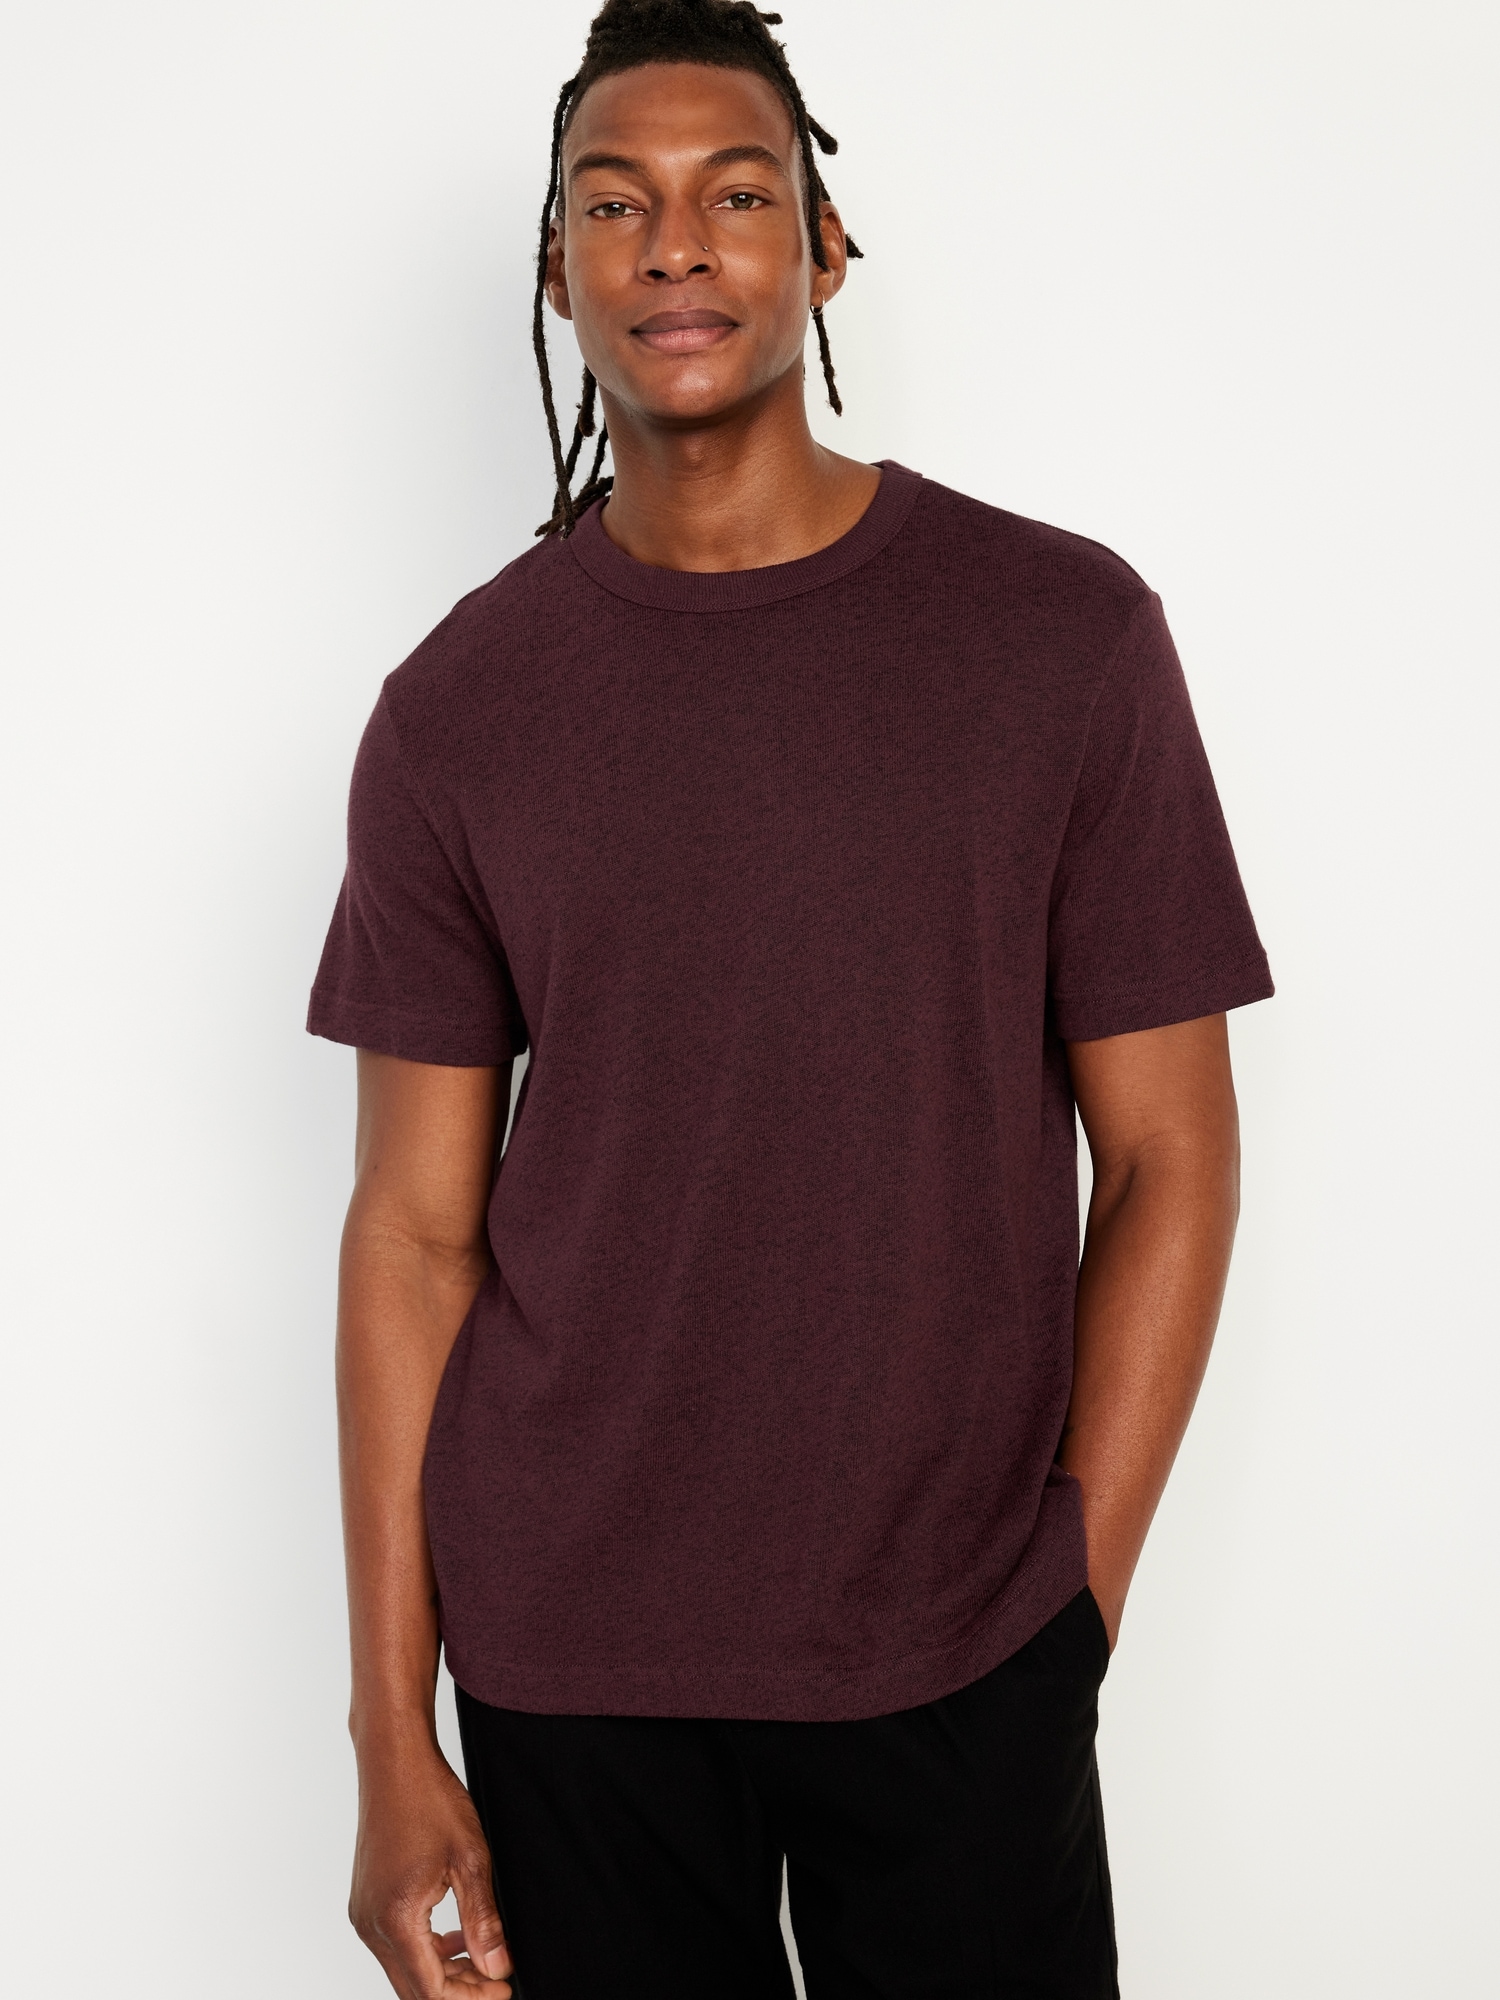 Jersey-Knit T-Shirt Hot Deal